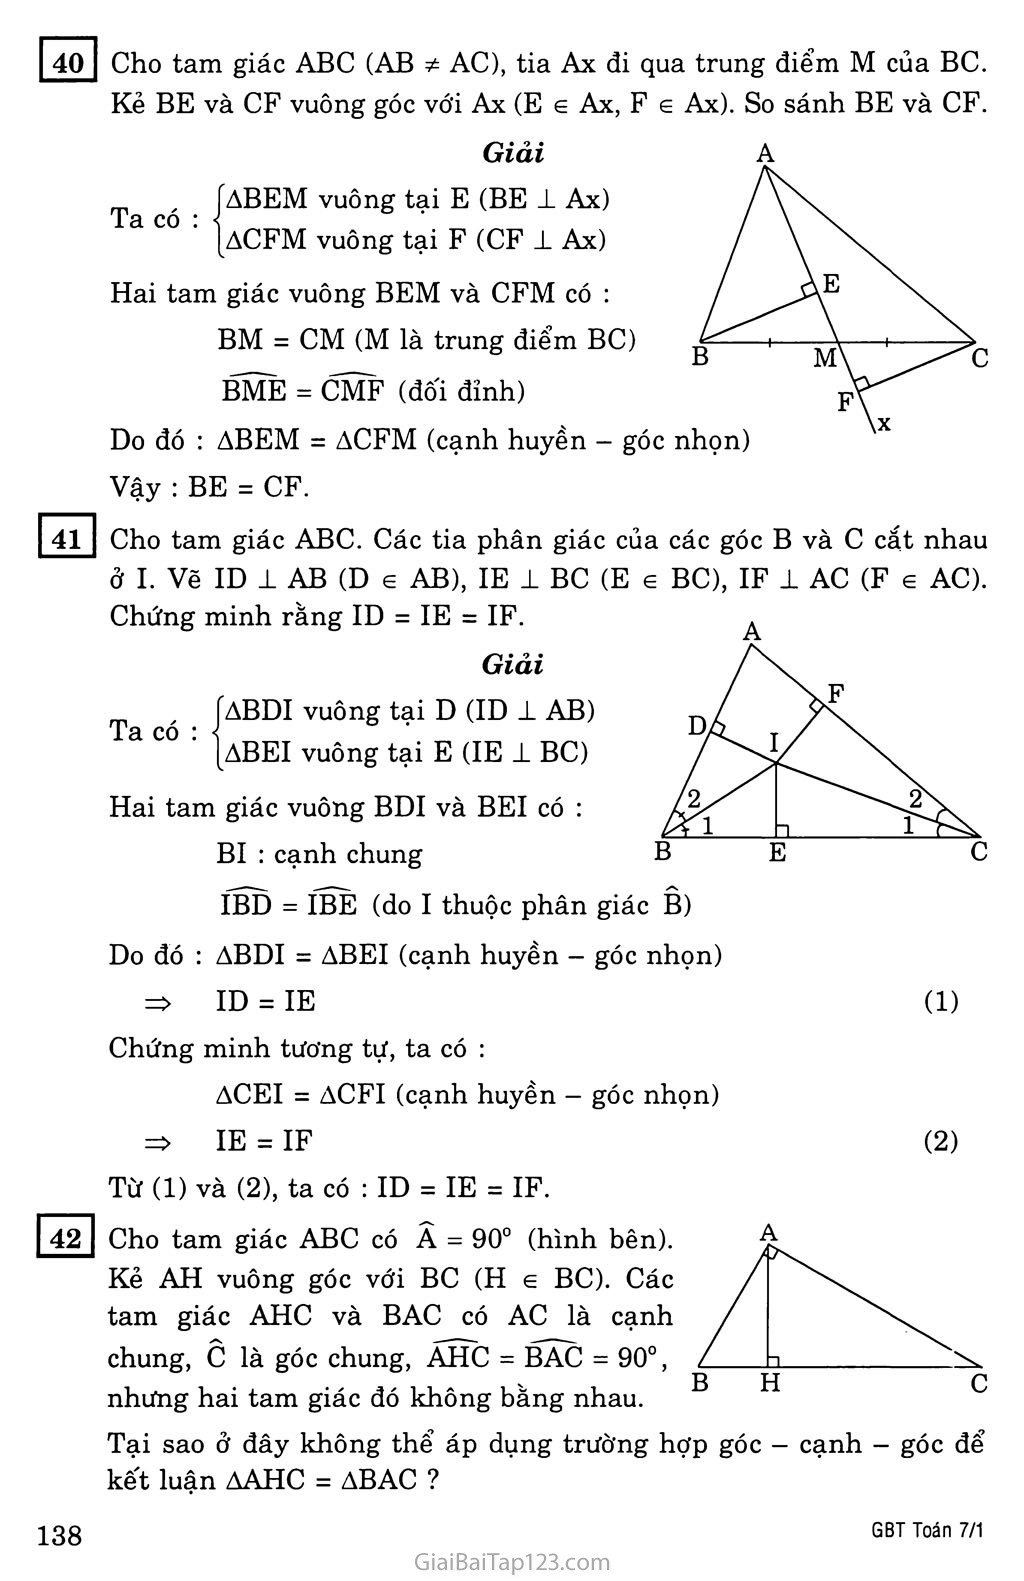 §5. Trường hợp bằng nhau thứ ba của tam giác: góc - cạnh - góc (g.c.g) trang 7